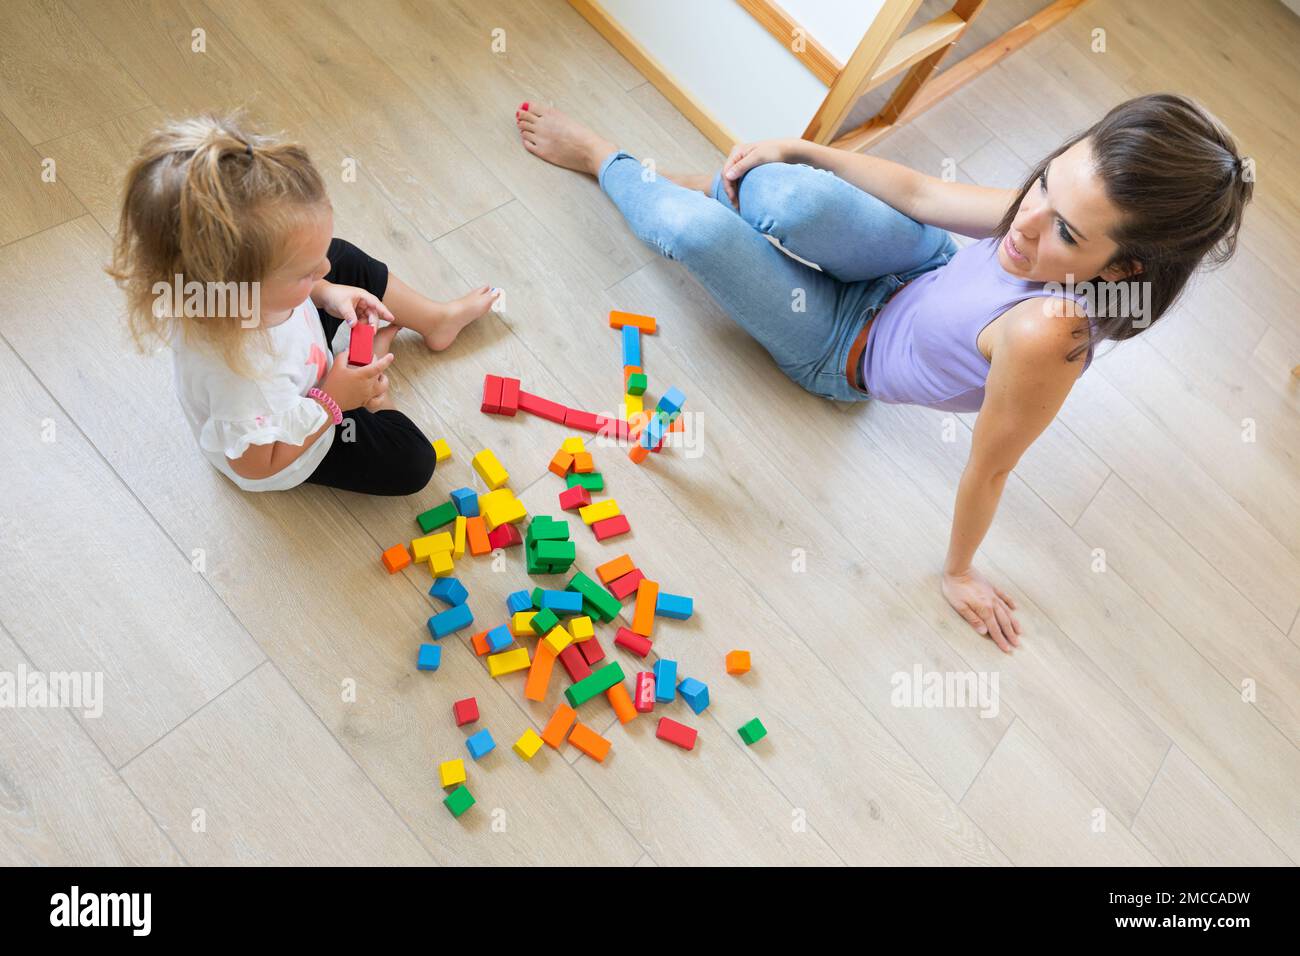 Dans une pièce lumineuse et colorée, mère et fille jouent avec des constructions en bois colorées, parlant les uns aux autres comme ils construisent et inventent Banque D'Images